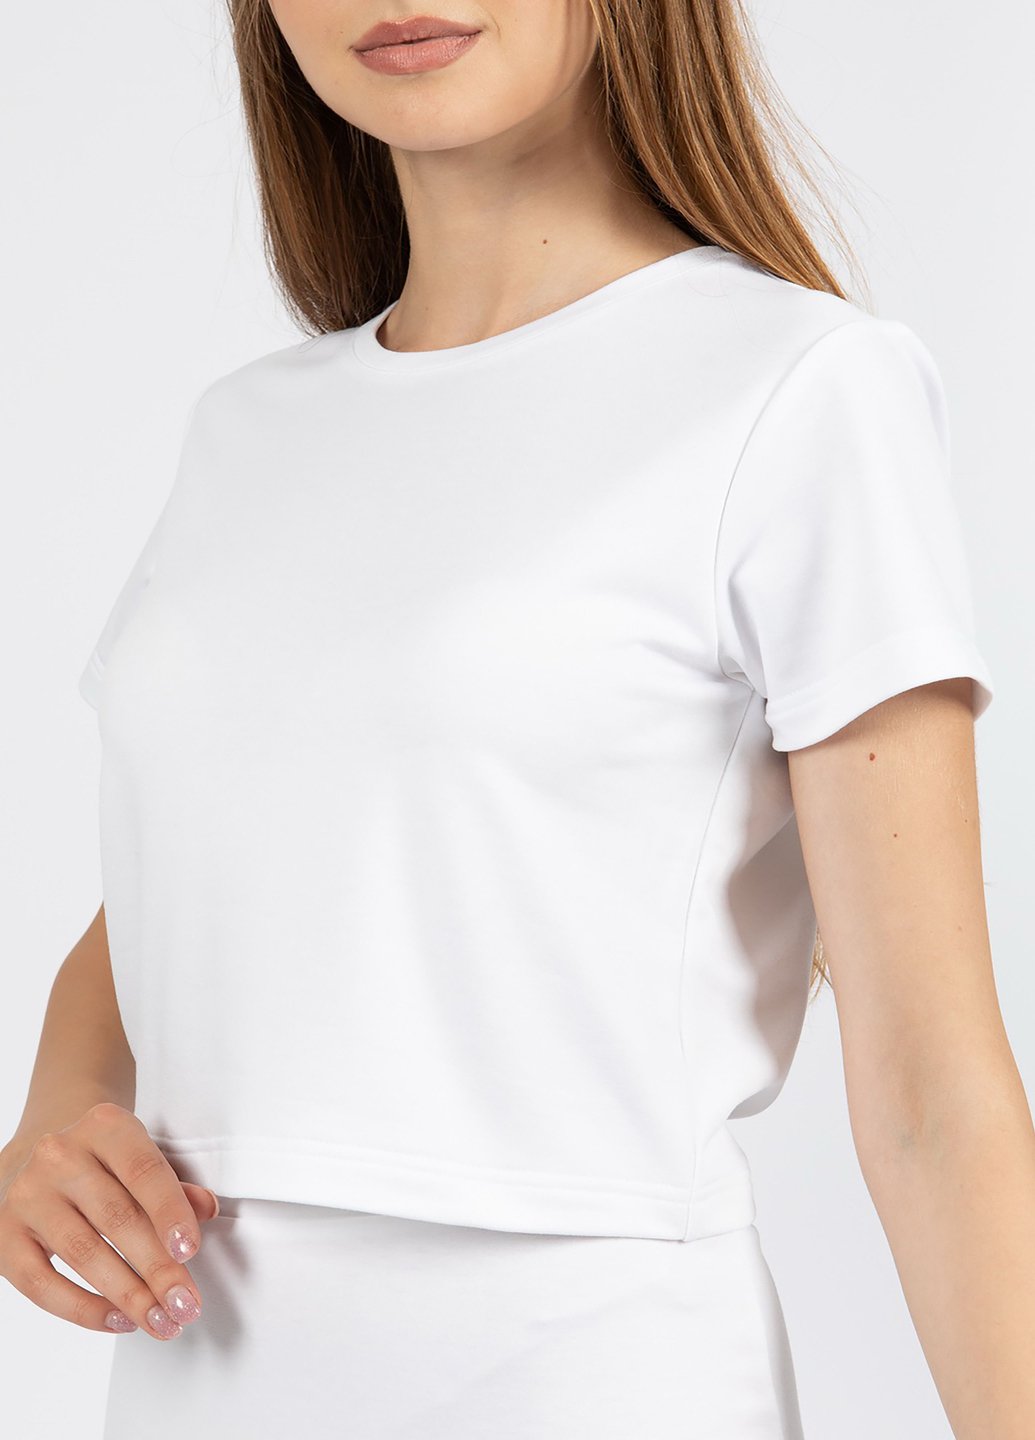 Купить Укороченная футболка женская Merlini Монруж 800000007 - Белый, 42 в интернет-магазине